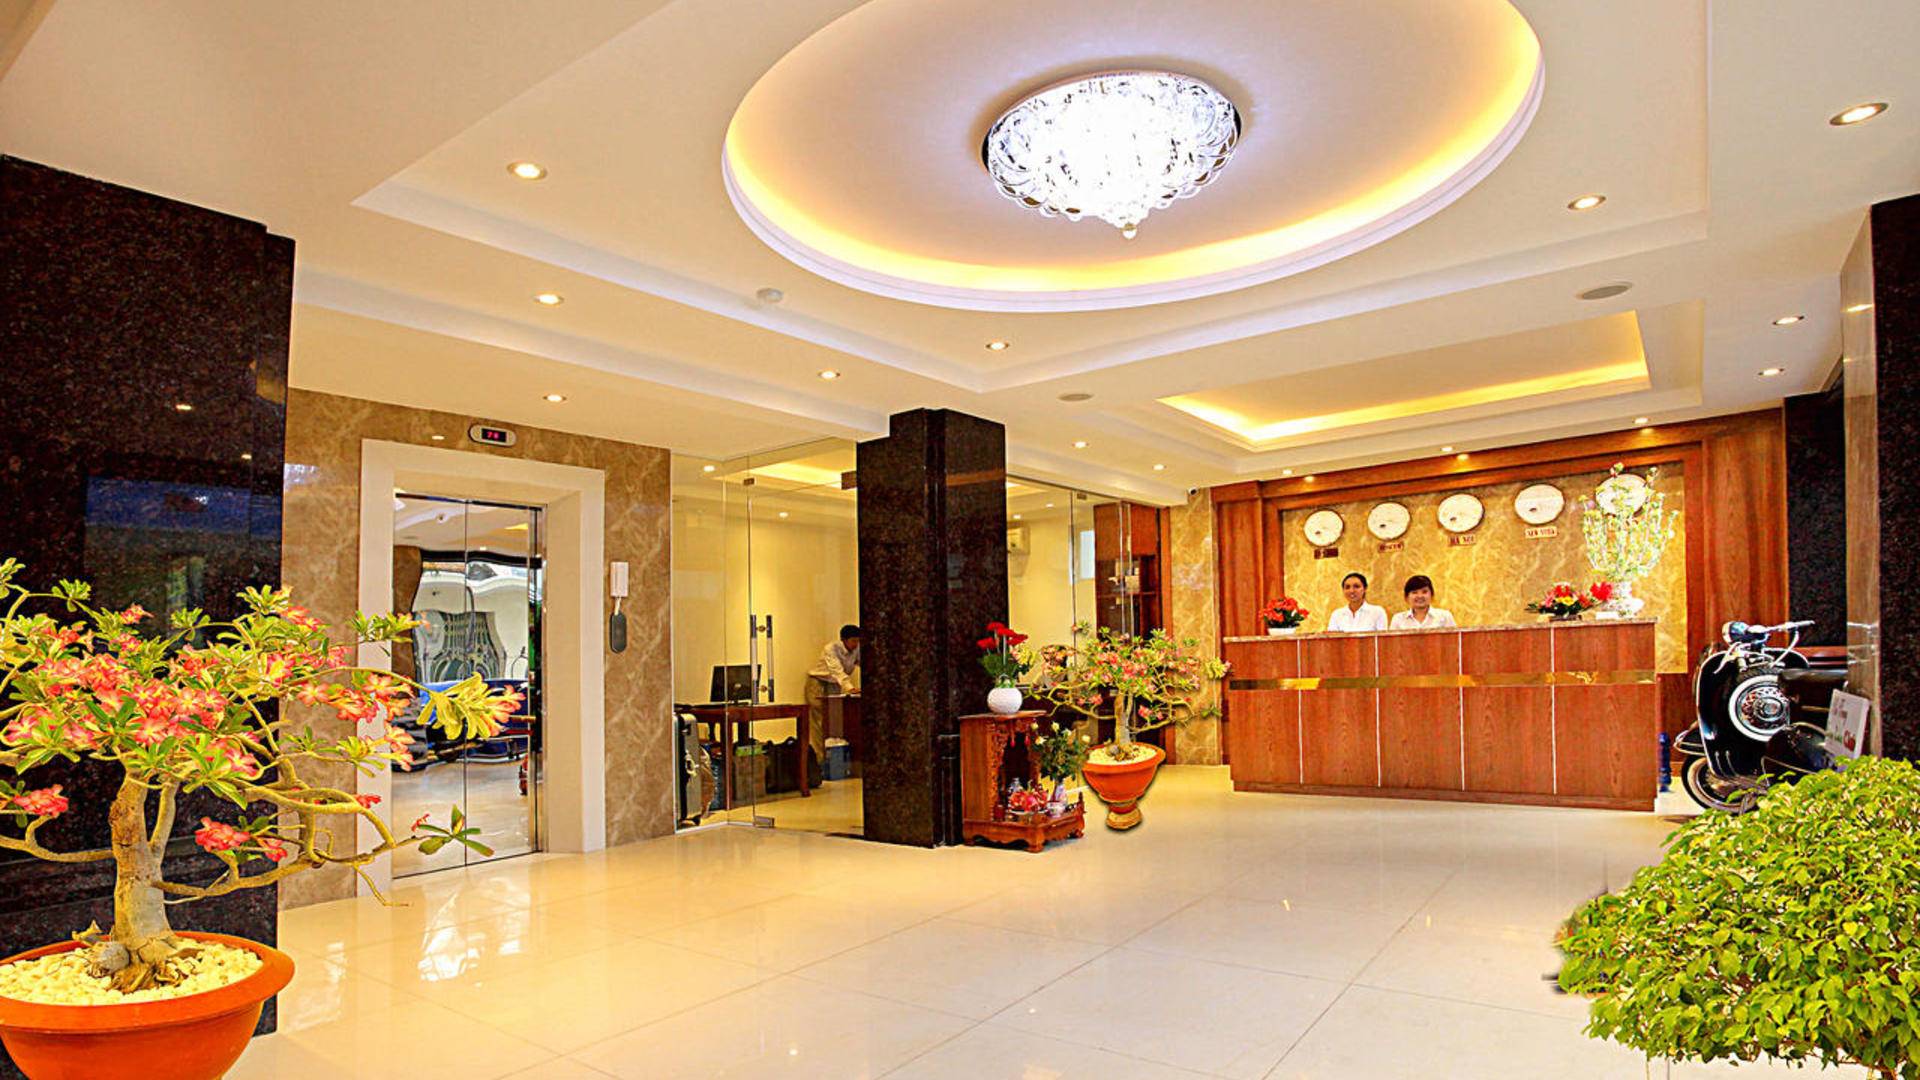 Отели 3 звезды в нячанг вьетнам: лучшие варианты комфортного размещения в городе